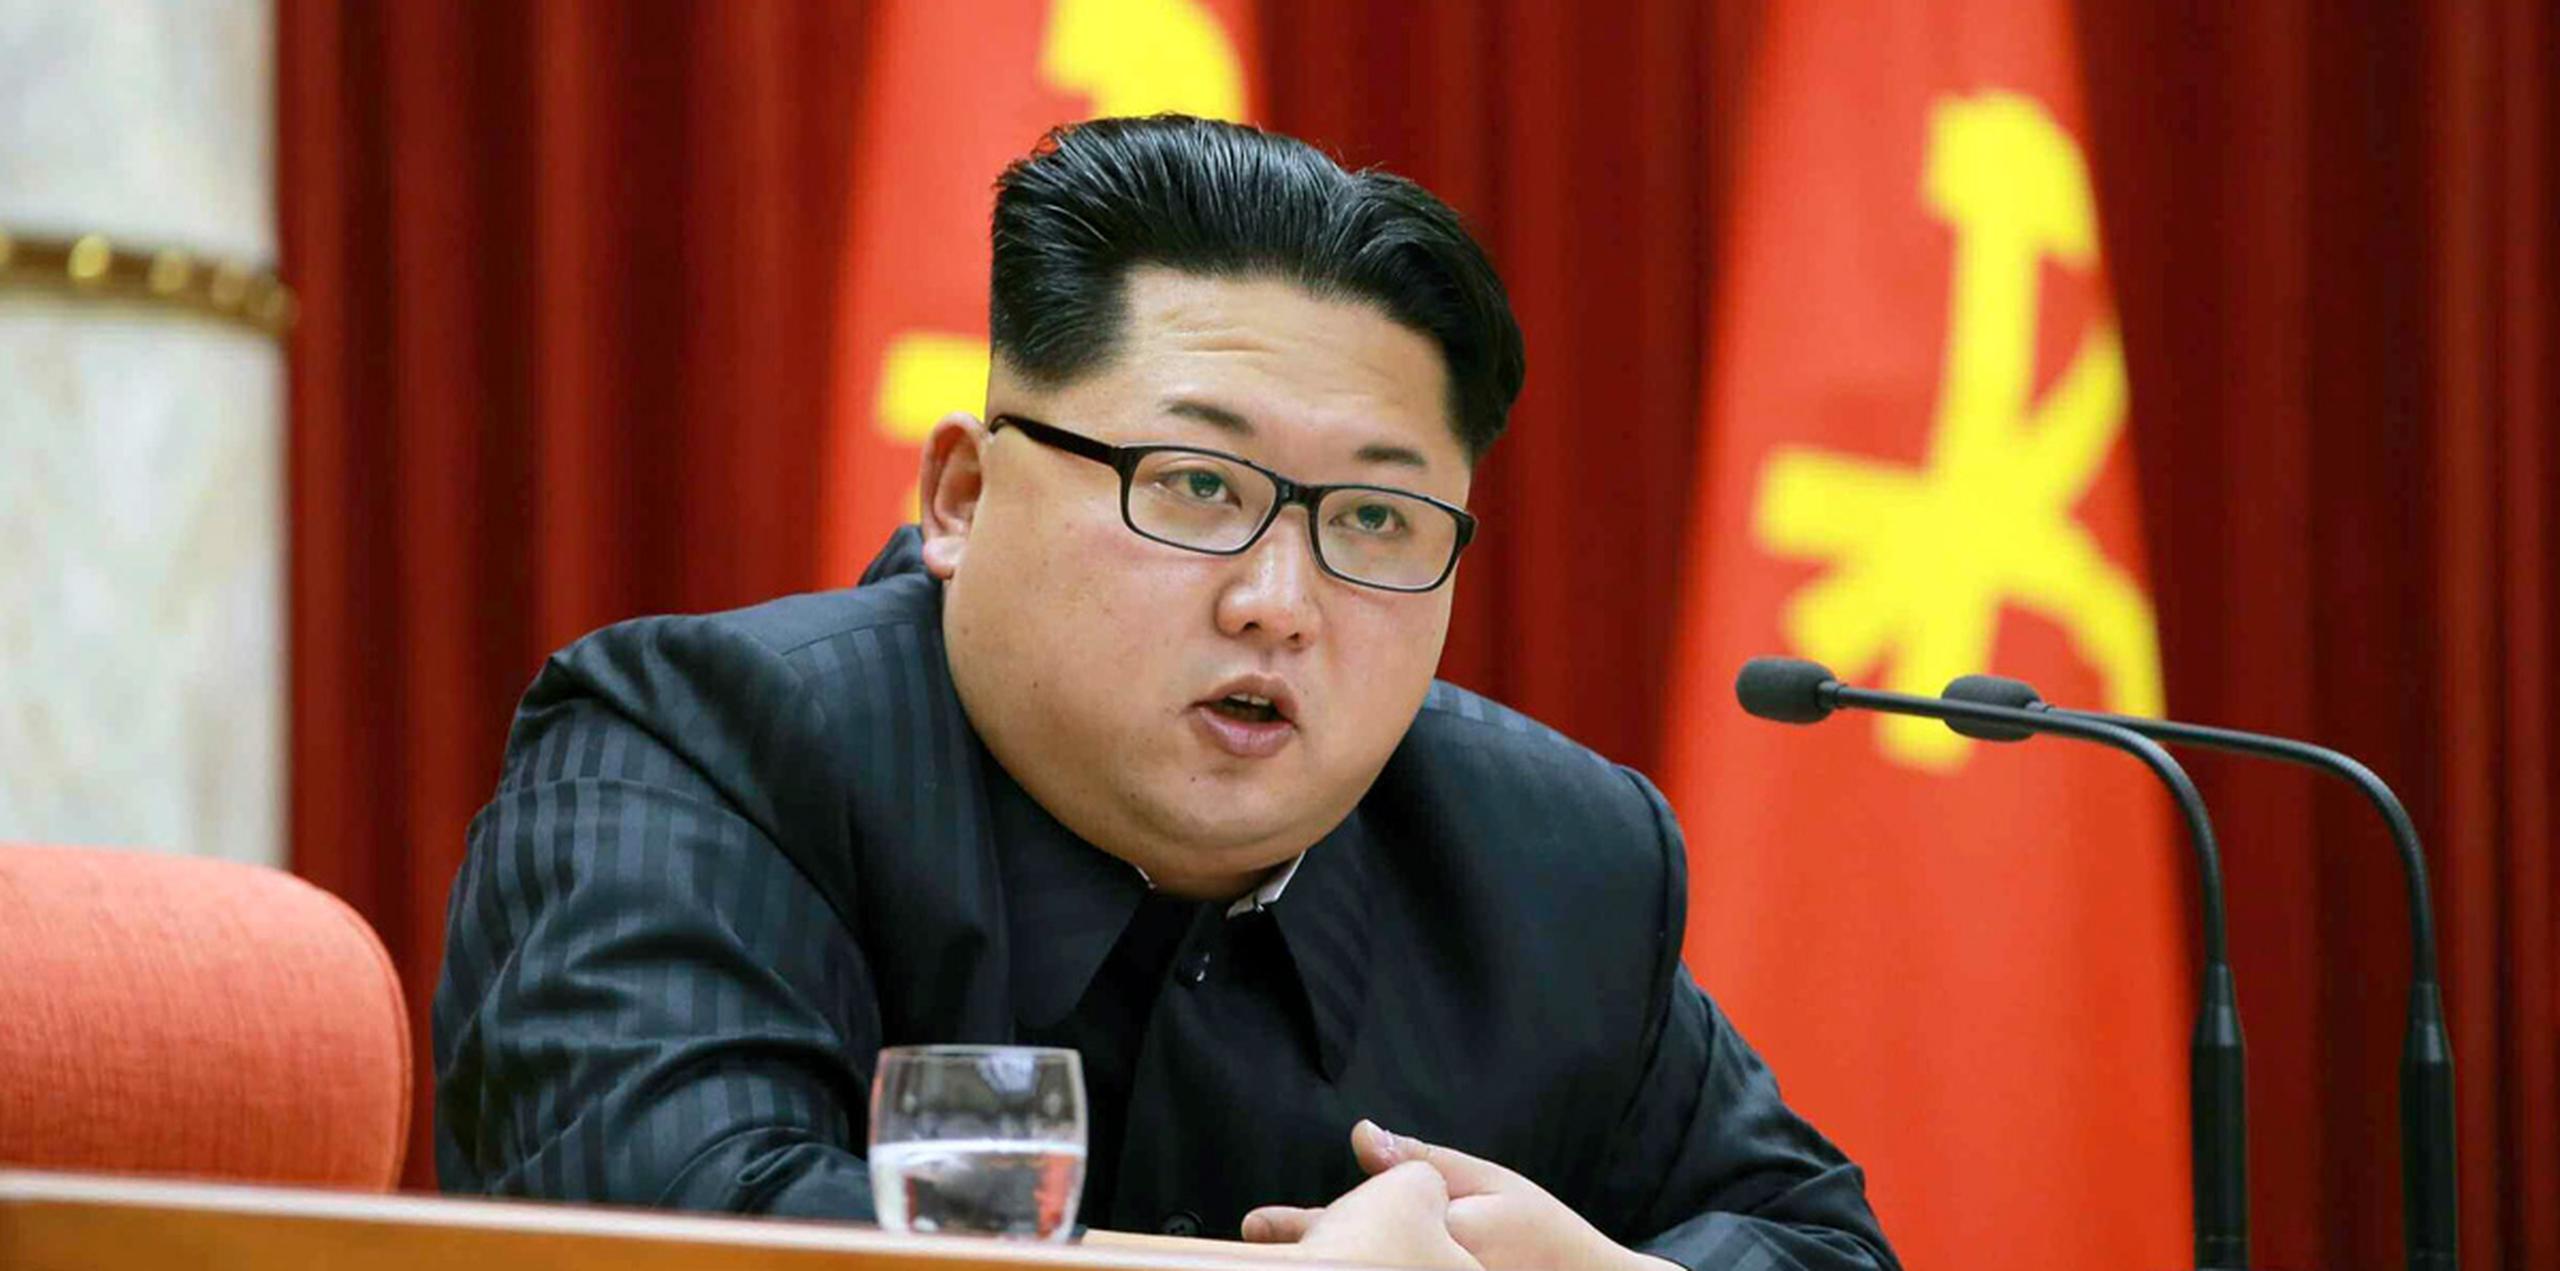 El régimen que lidera Kim Jong-un lanzó esta advertencia a través de sus medios oficiales coincidiendo con la celebración del Día Nacional de su Ejército Naval, y después de ejecutar el pasado sábado un nuevo test con misiles balísticos de corto alcance. (AP)